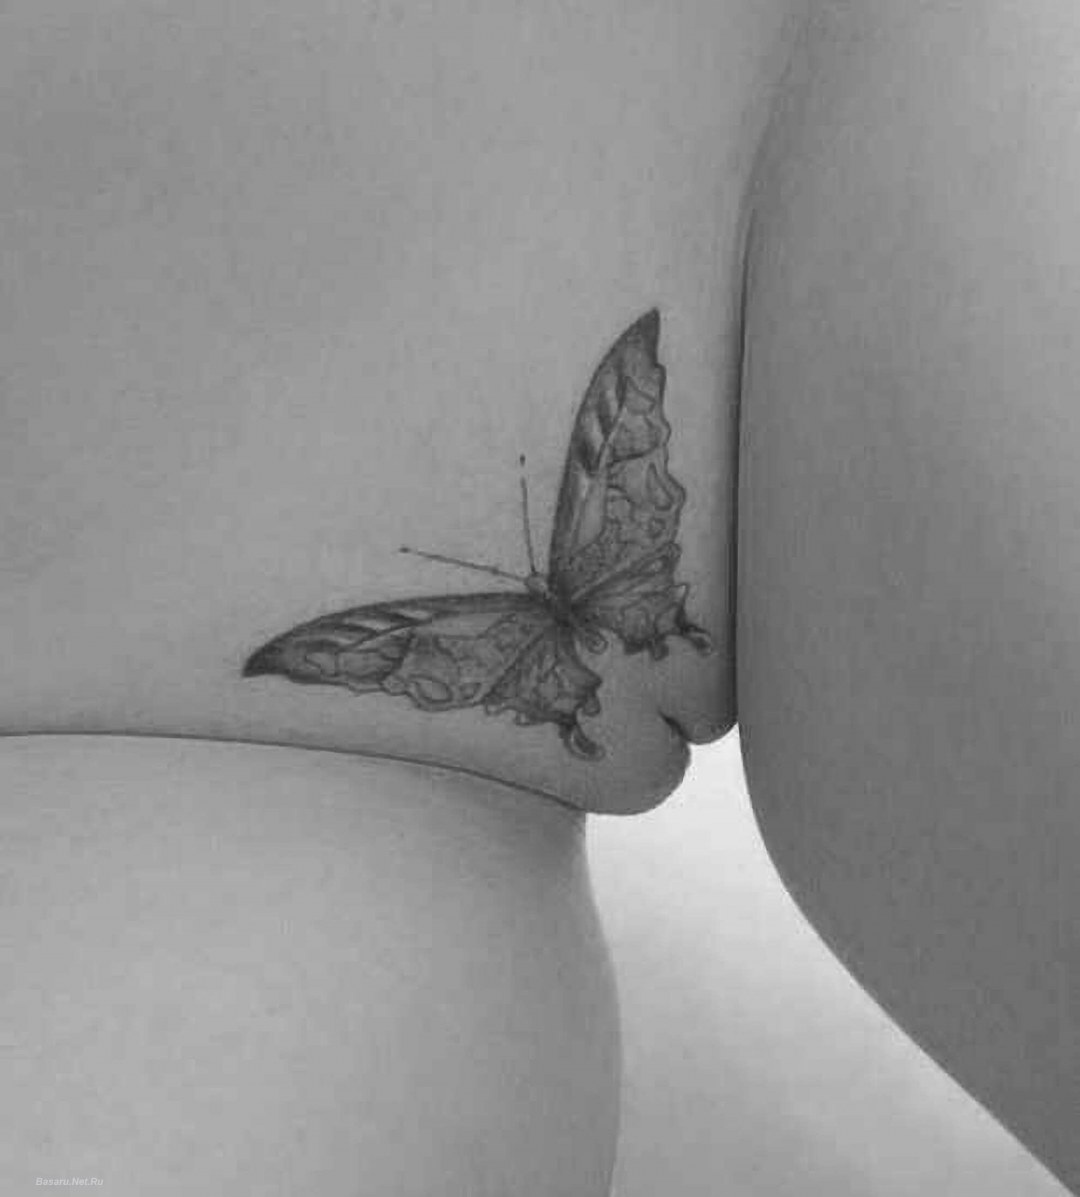 Порноактриса с бабочкой на жопе (61 фото) - секс и порно